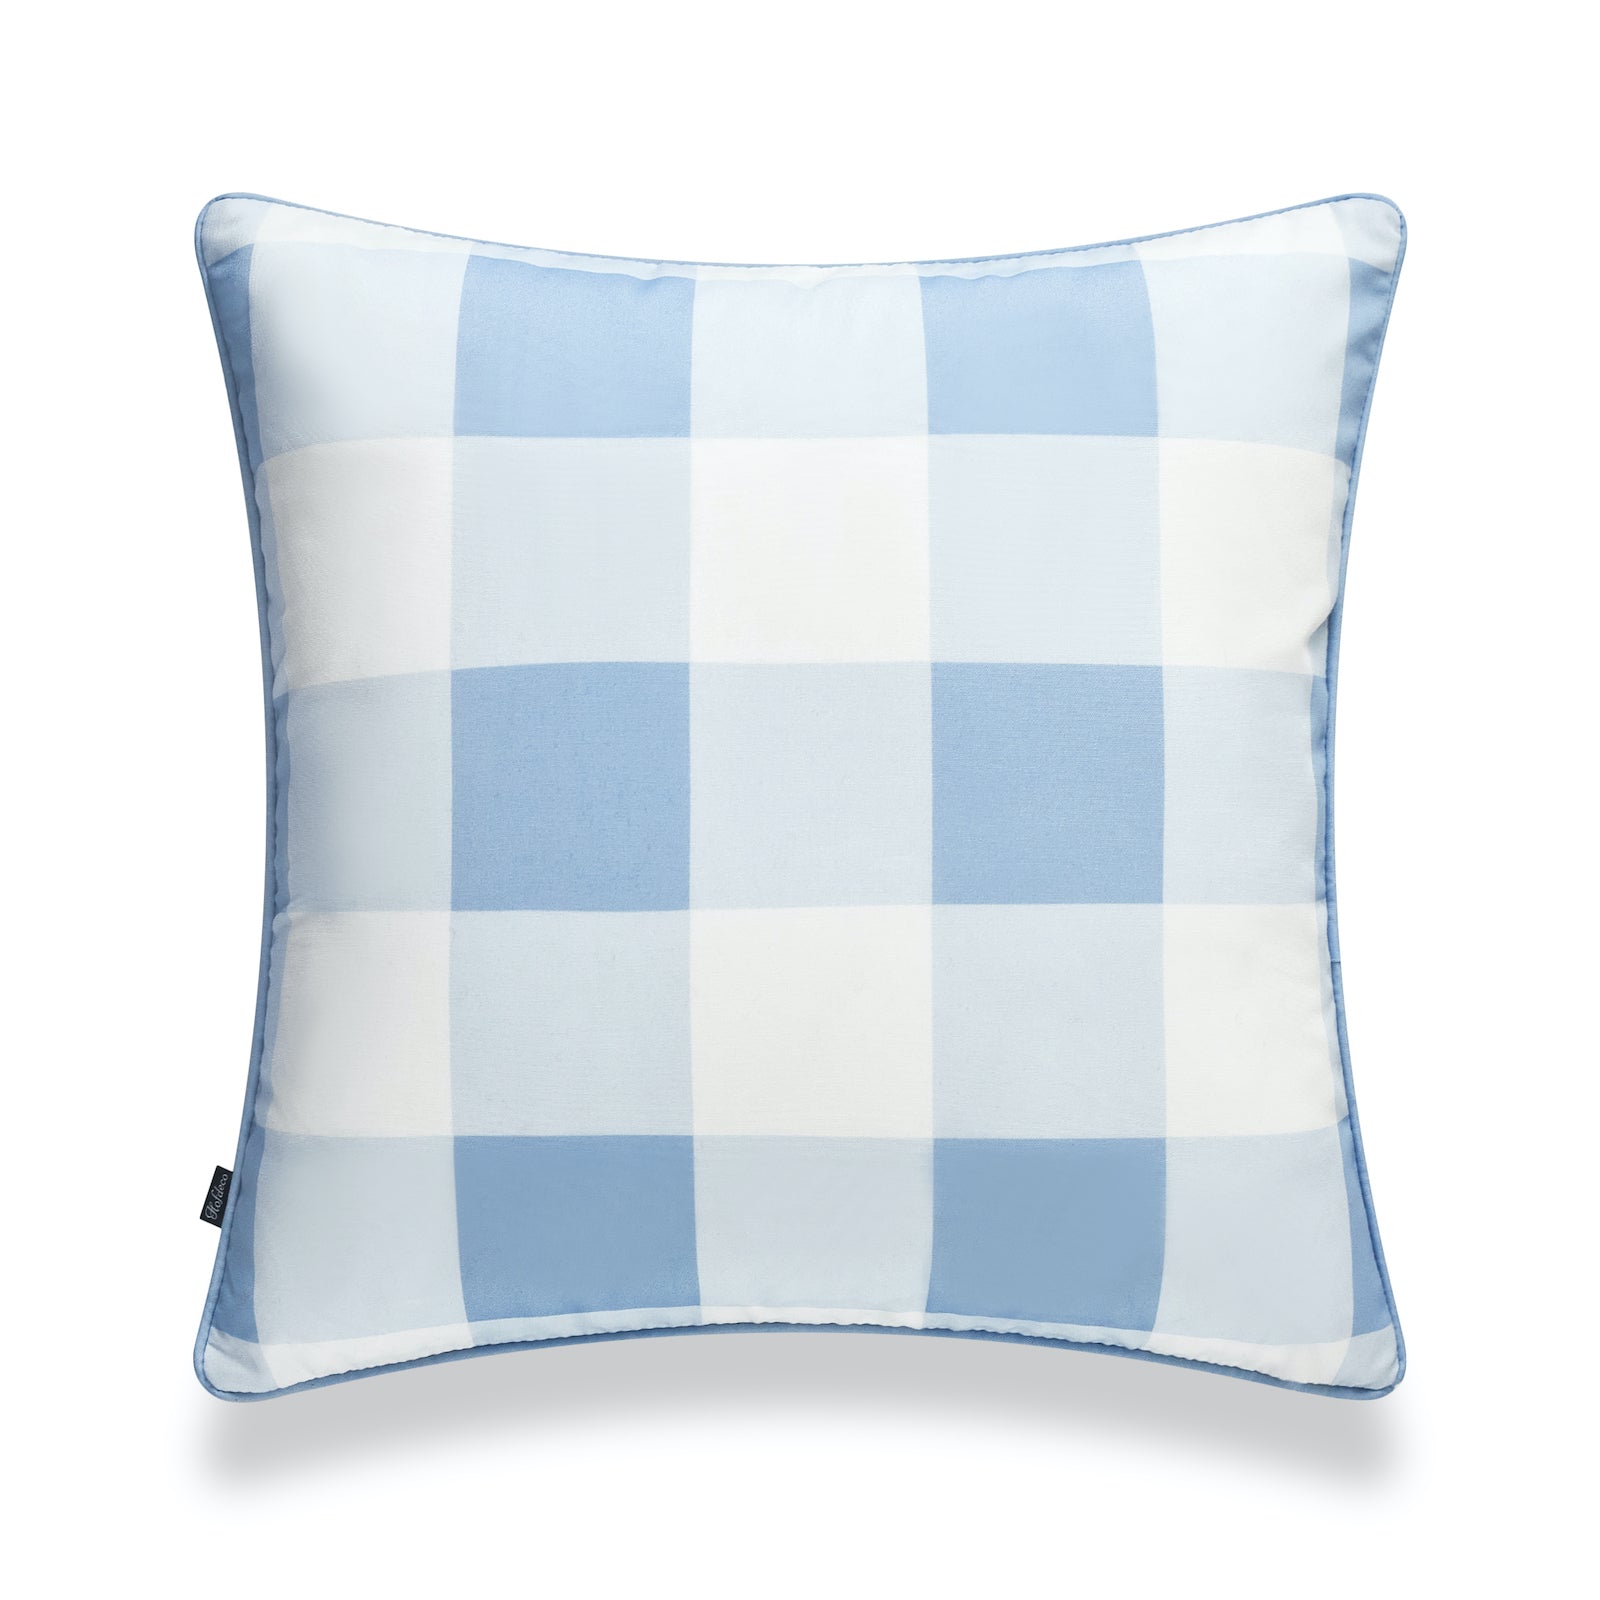 Coastal Indoor Outdoor Pillow Cover, Buffalo Check, Baby Blue, 20"x20"-0